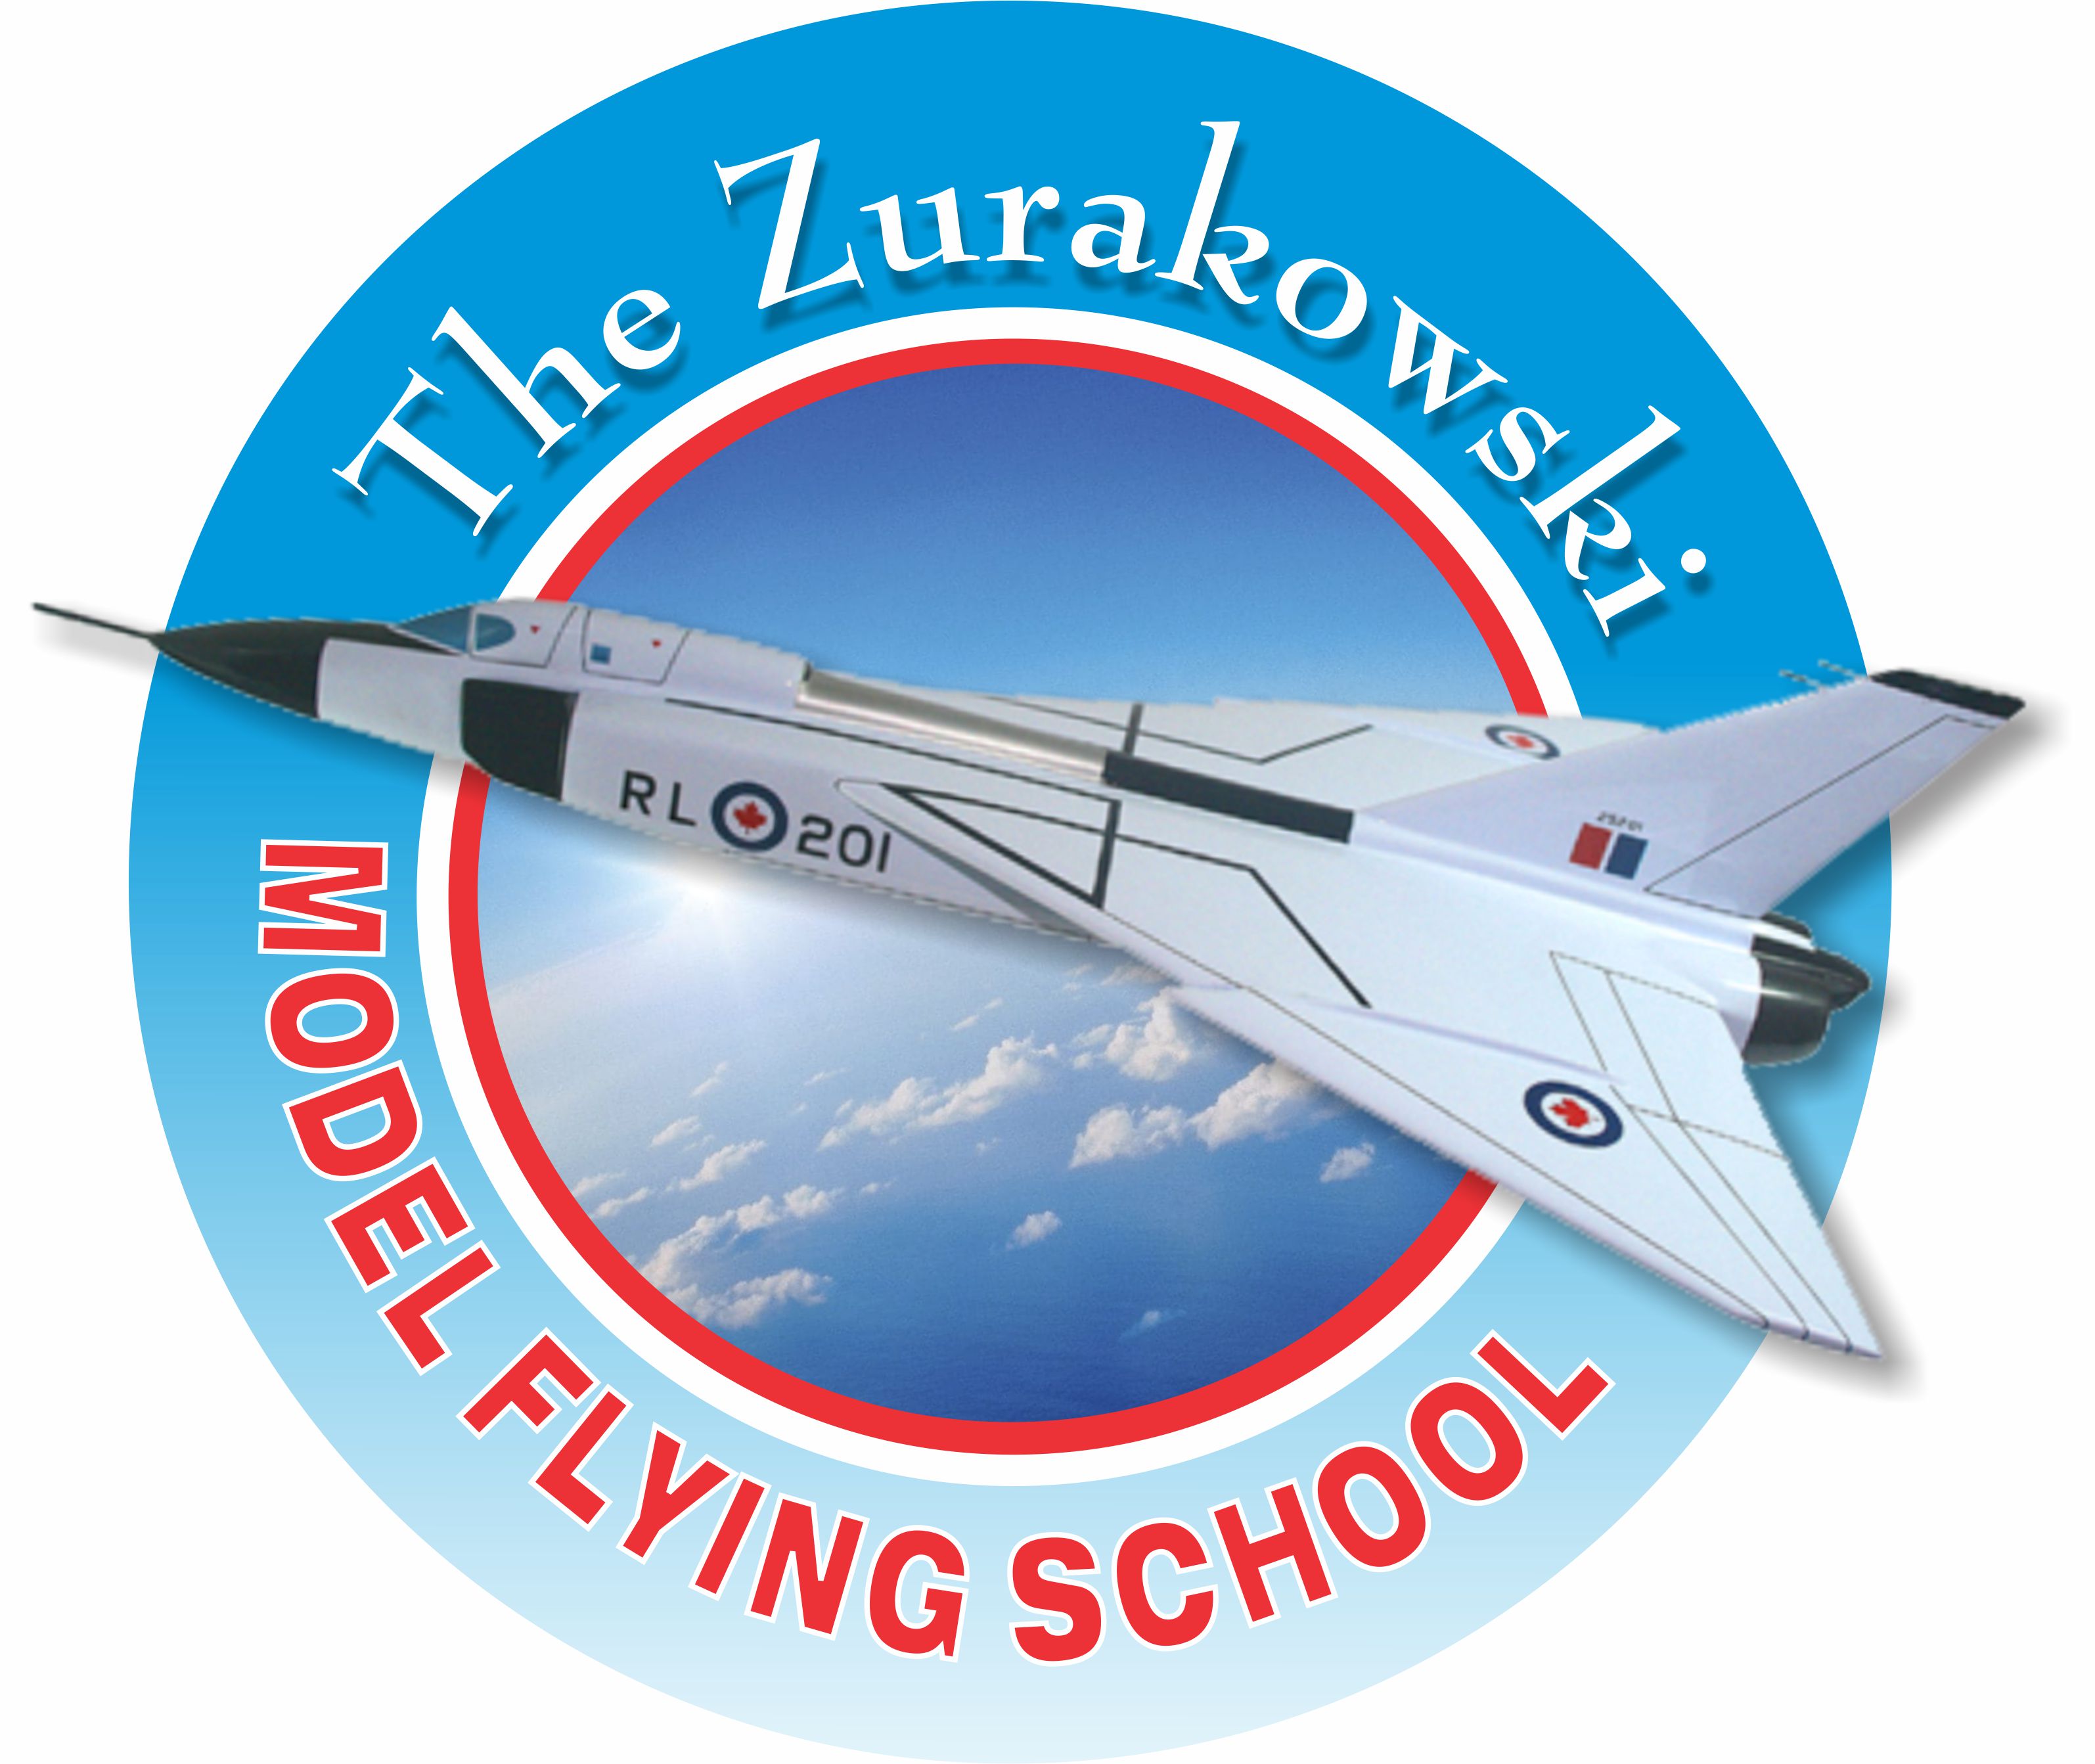 The Zurakowski Model Flying School